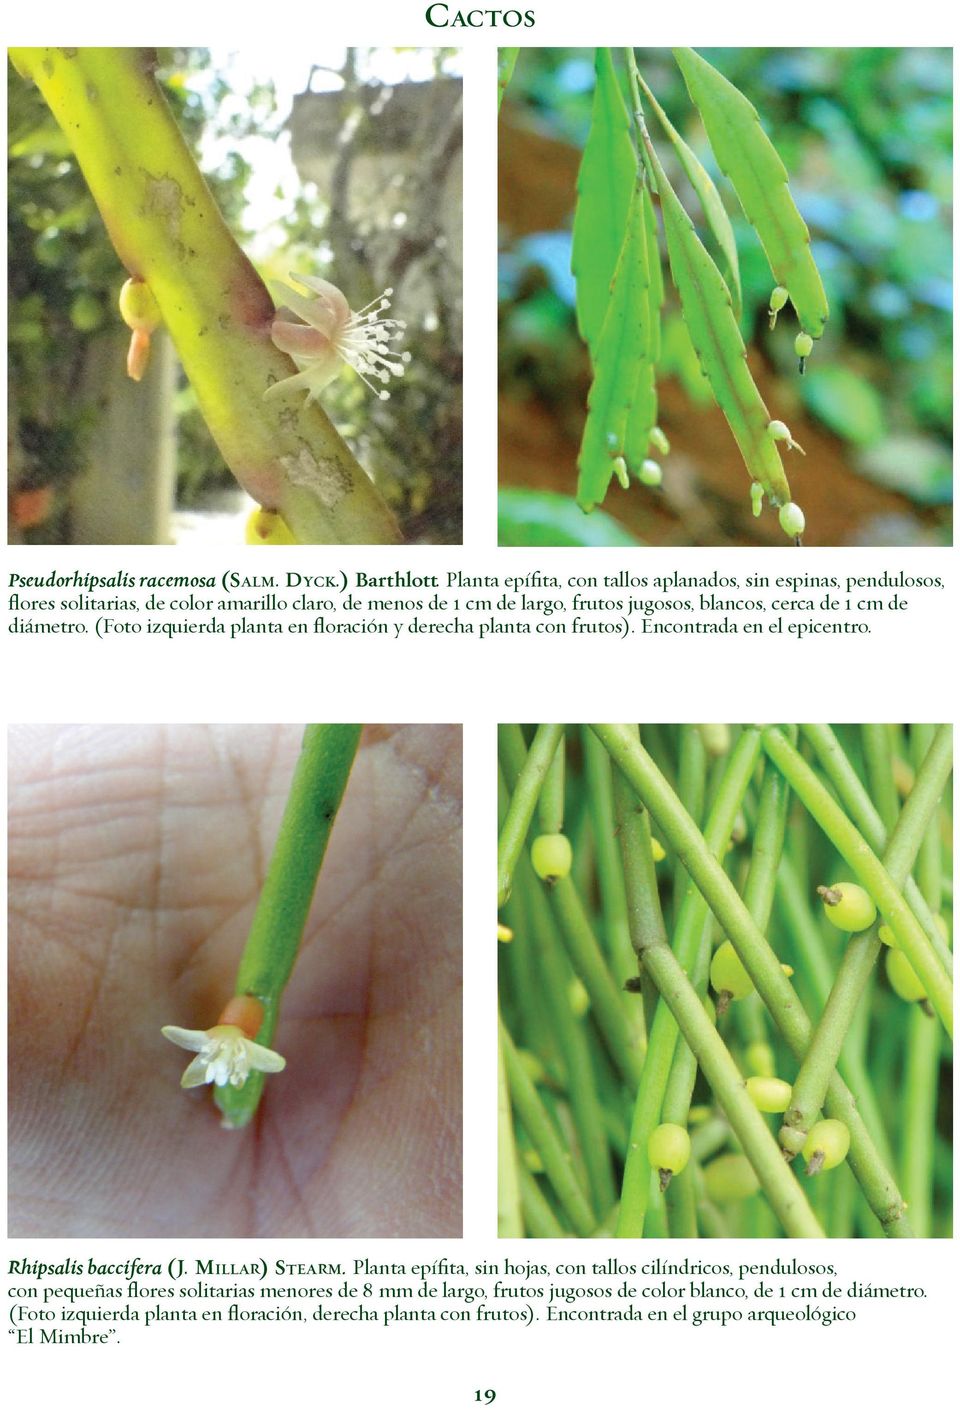 de 1 cm de diámetro. (Foto izquierda planta en floración y derecha planta con frutos). Encontrada en el epicentro. Rhipsalis baccifera (J. MILLAR) STEARM.